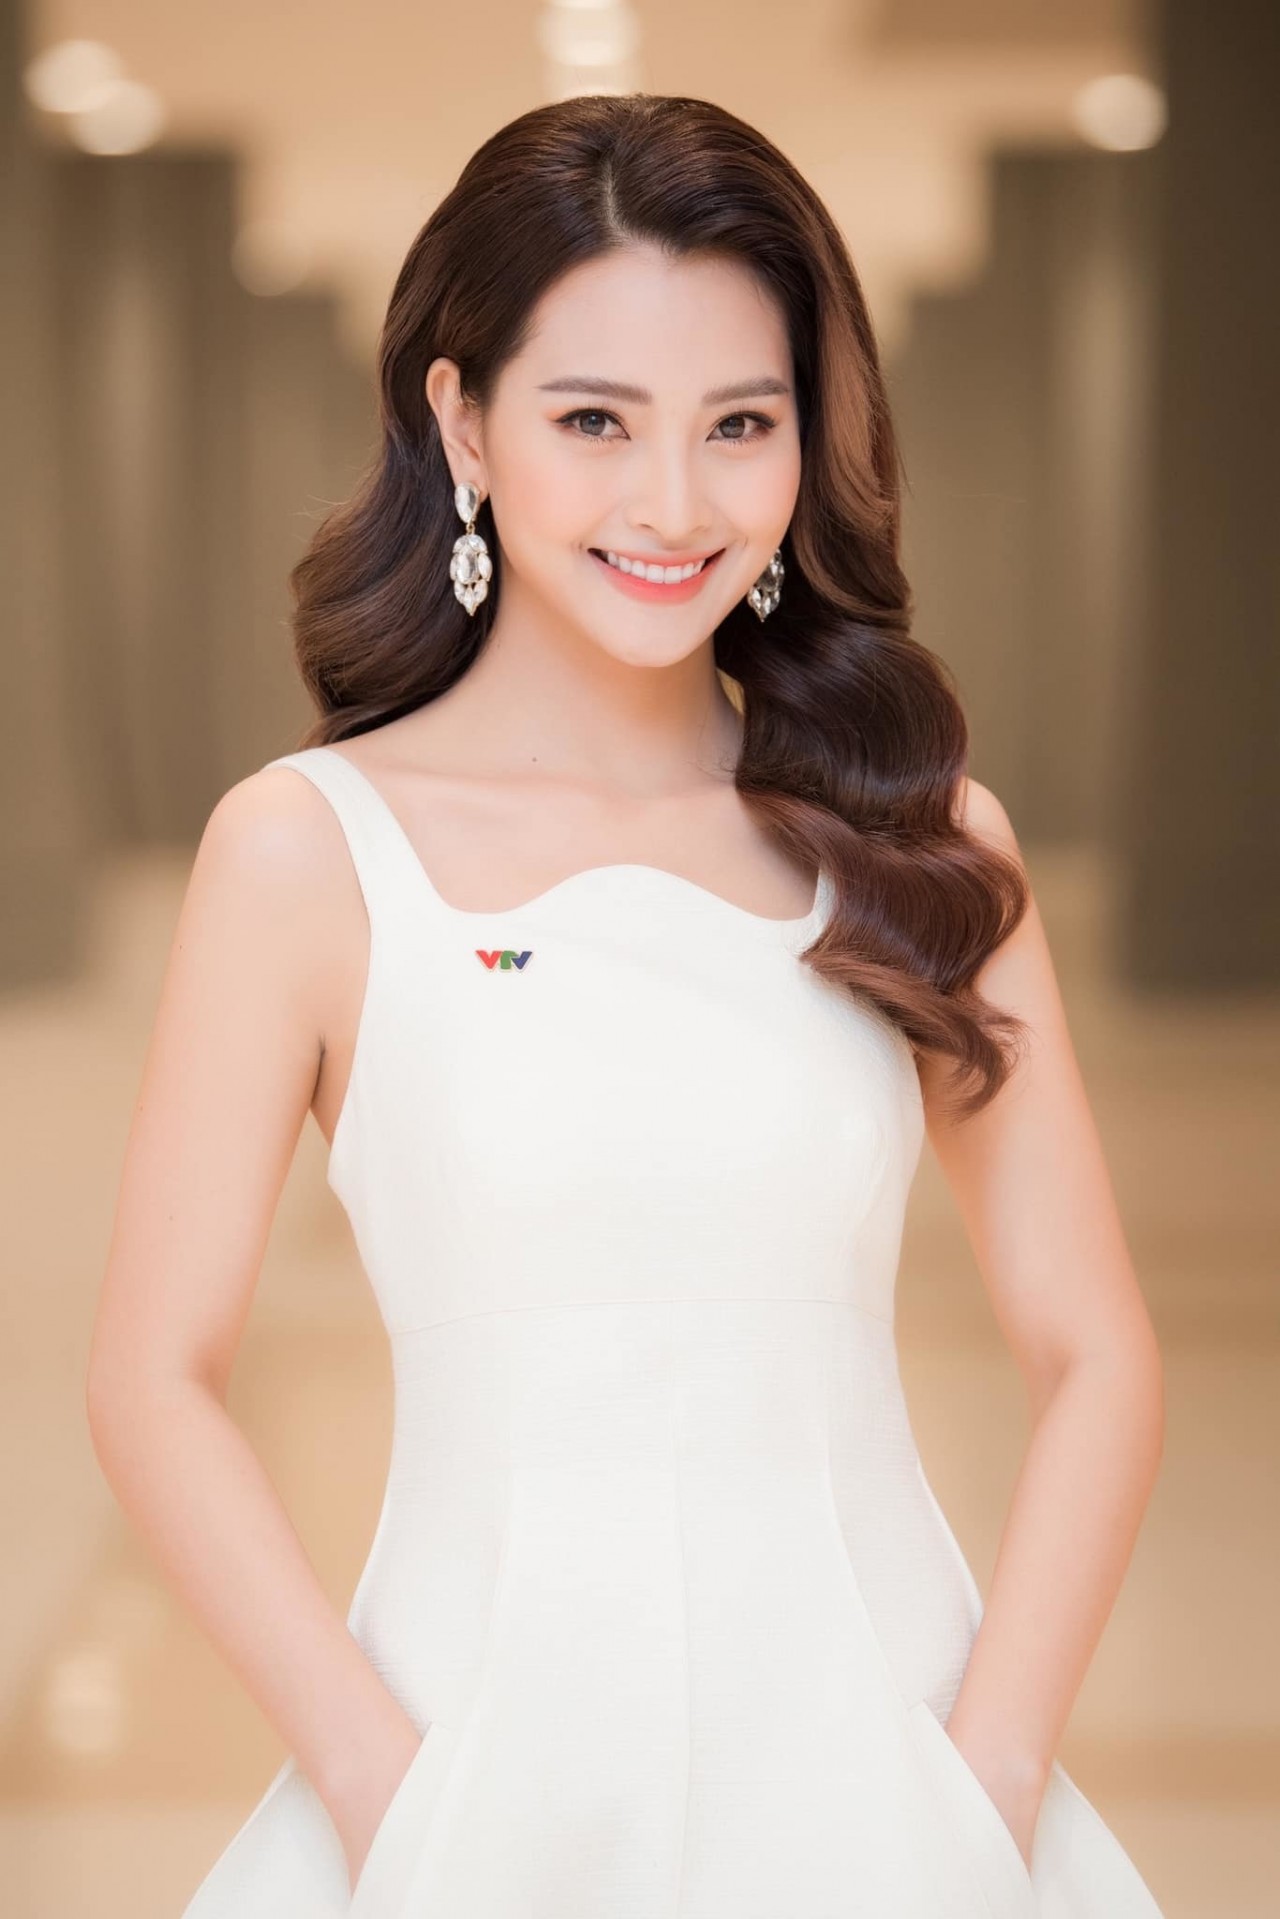 11 tháng 5 ngày: Dung nhan rạng ngời của MC VTV vào vai tình đầu